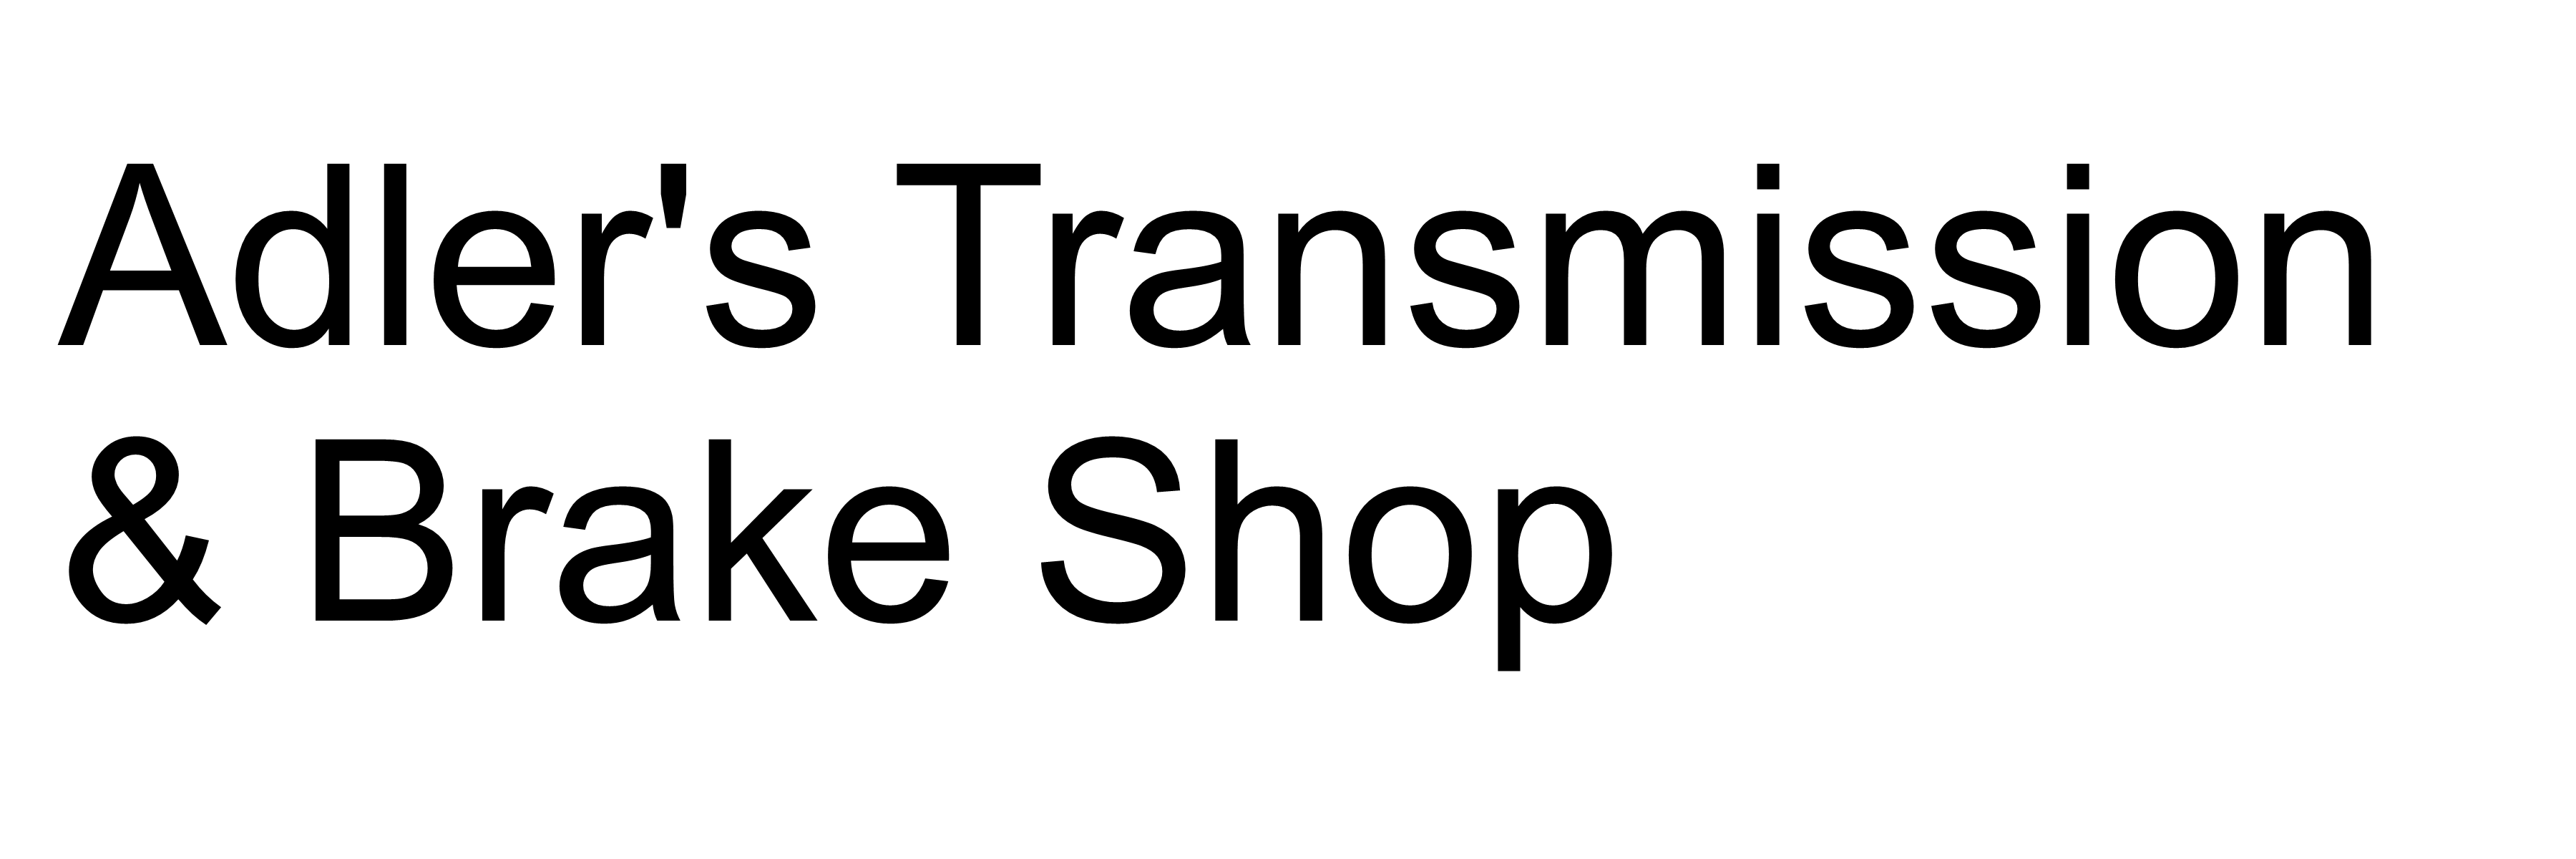 Adlers Transmission & Brake Shop